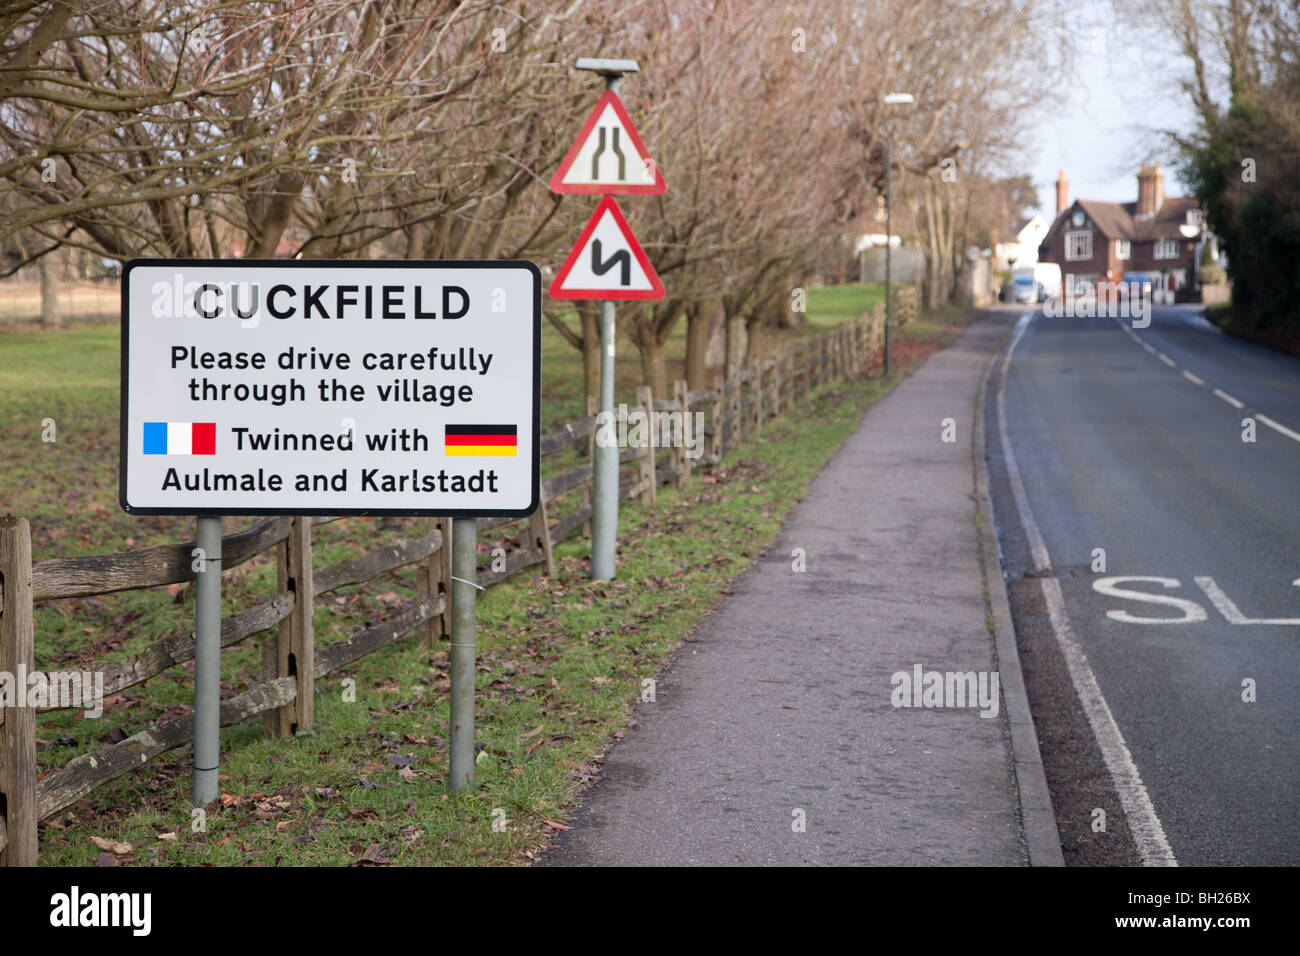 Mehrere Verkehrszeichen zeigt den Eingang des Sussex Dorf von Cuckfield zusammen mit Straße Gefahrenhinweise. Stockfoto